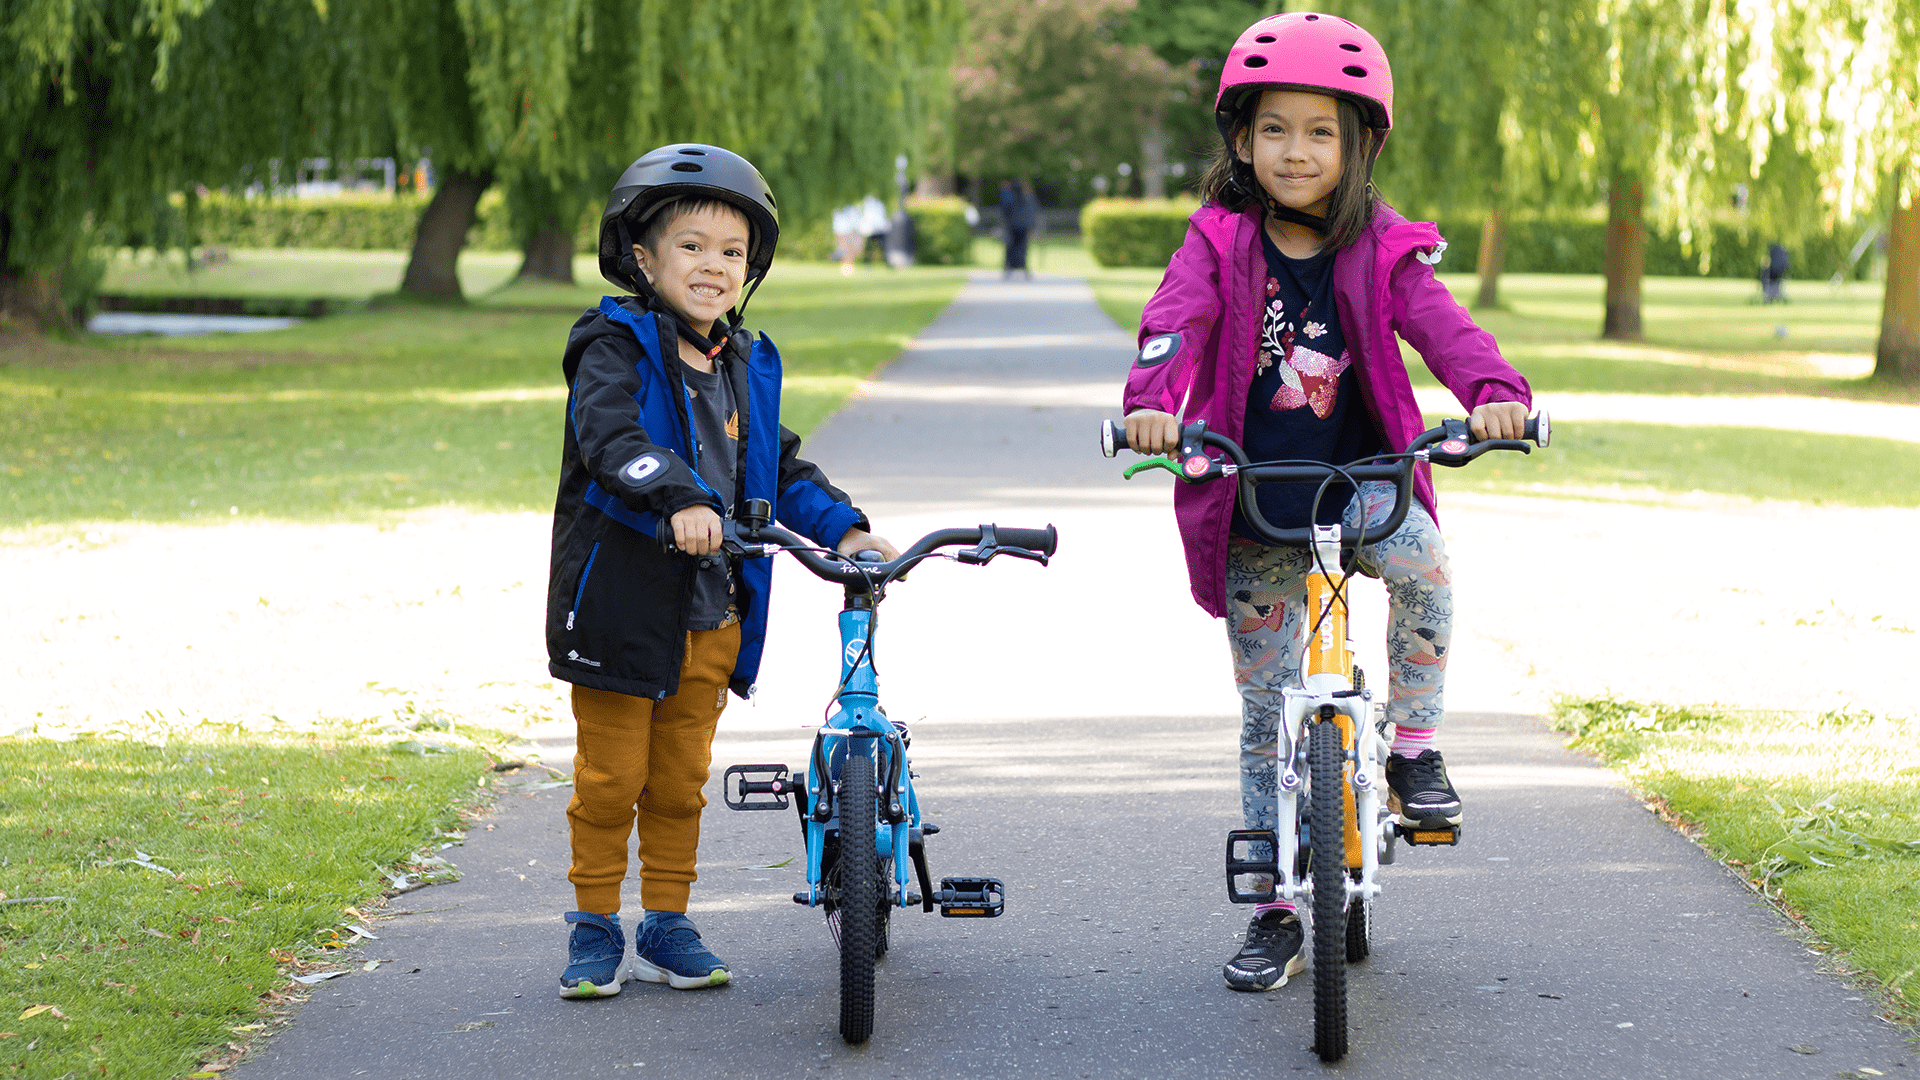 two kids on bikes - bike club